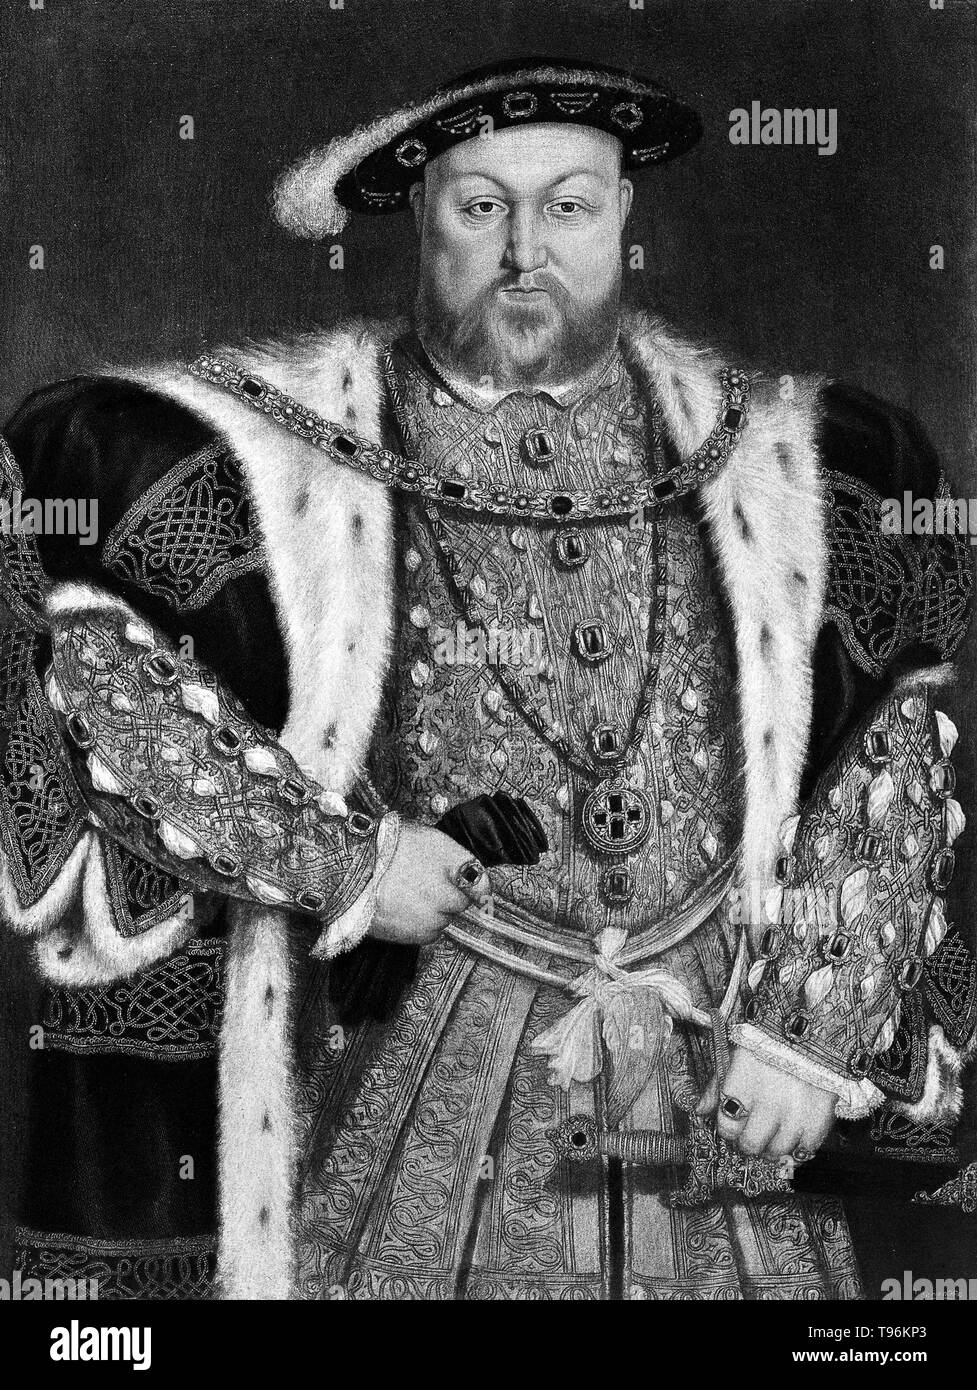 Portrait du Roi Henry VIII dans la Collection royale de Windsor. Henry VIII (28 juin 1491 - 28 janvier 1547) fut roi d'Angleterre à partir de 1509 jusqu'à sa mort. Henry est surtout connu pour ses six mariages, en particulier ses efforts pour faire son premier mariage, à Catherine d'Aragon, annulée. Son désaccord avec le Pape sur la question d'une telle annulation conduit Henry à lancer la réforme Anglaise, séparant l'église de l'Angleterre de l'autorité papale. Banque D'Images